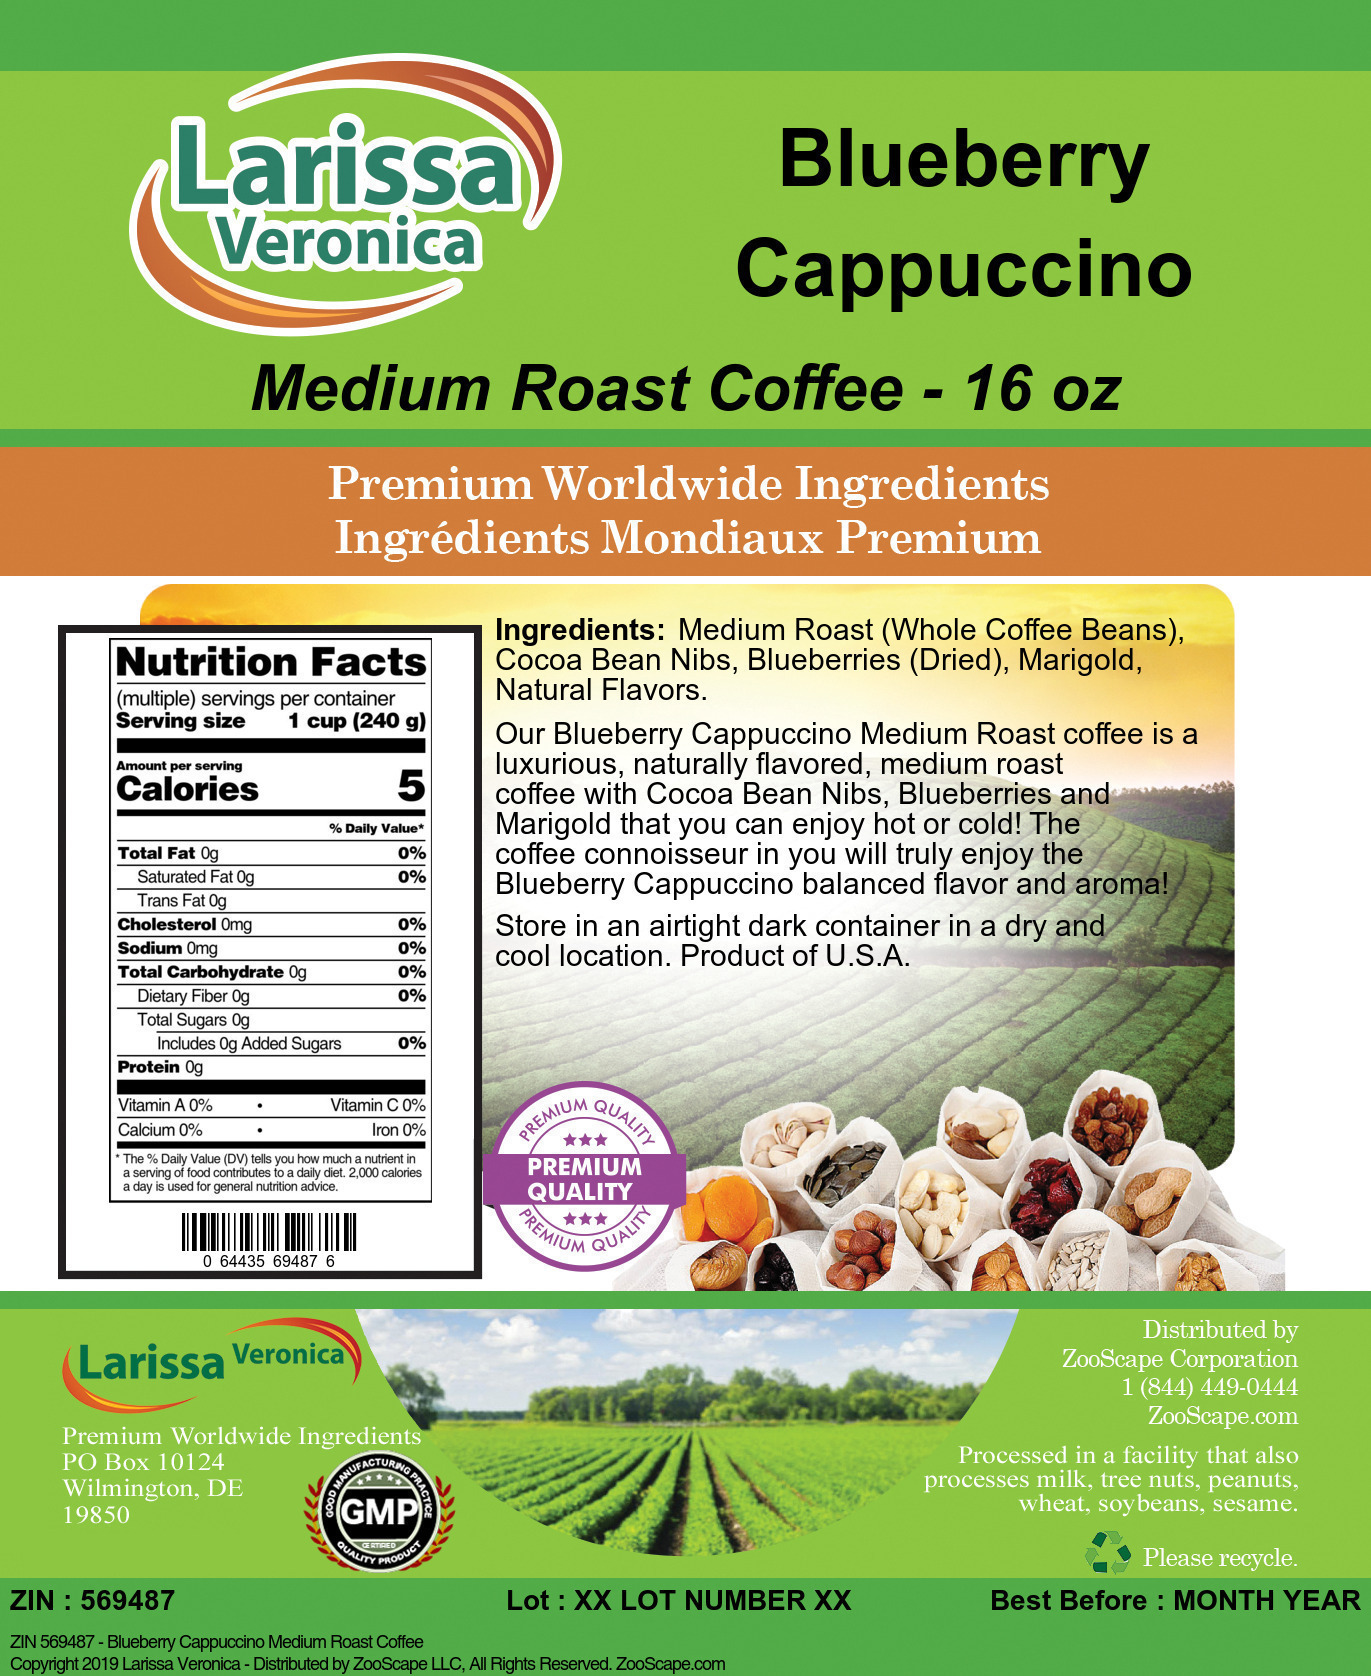 Blueberry Cappuccino Medium Roast Coffee - Label